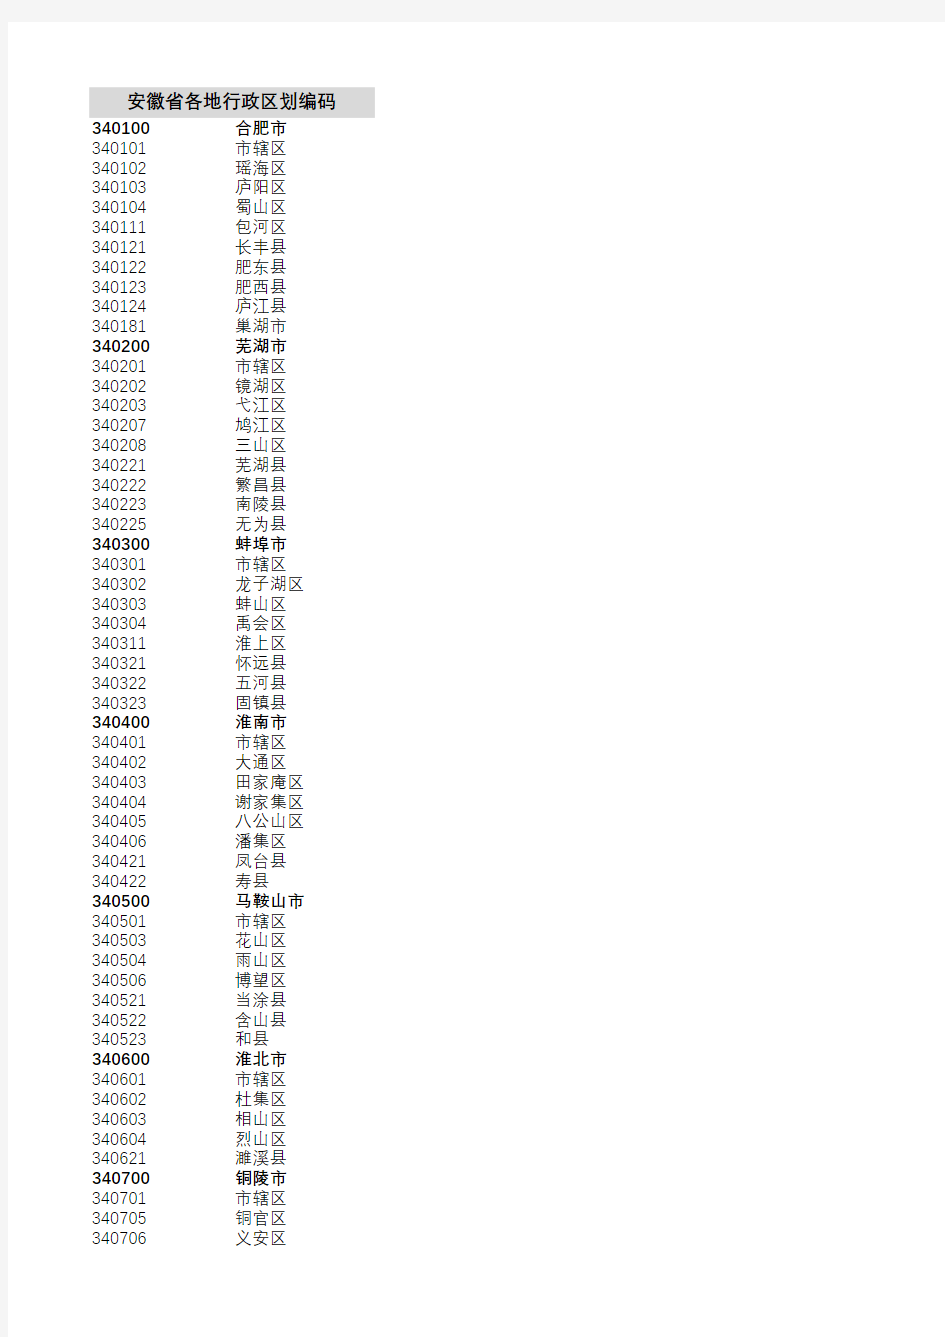 安徽省行政区划代码